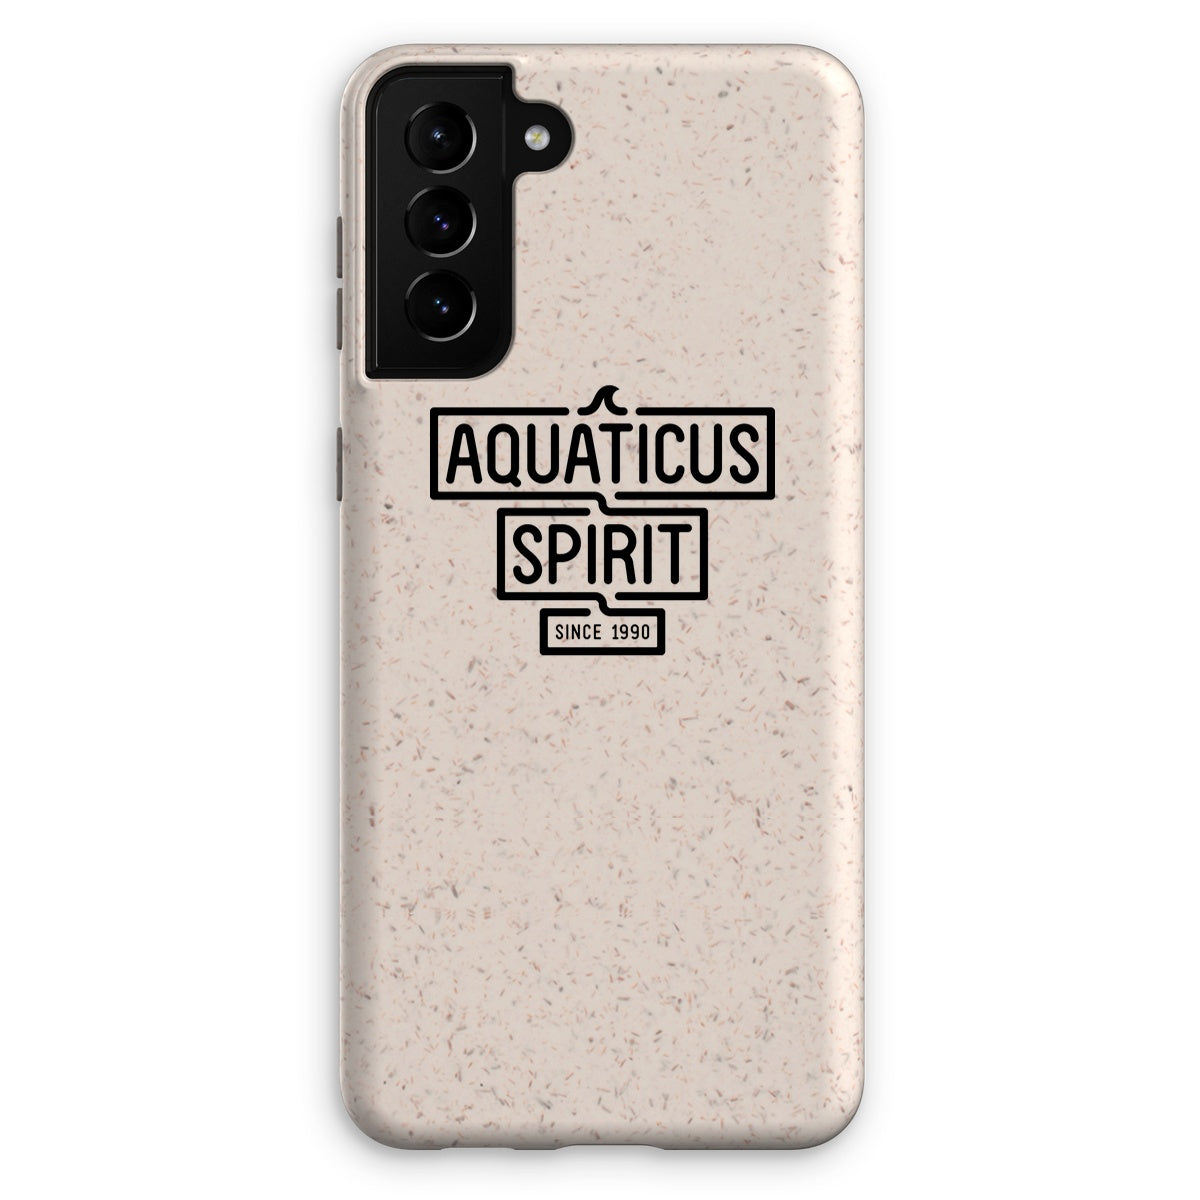 AQUA -  02 - Aquaticus Spirit - Eco Phone Case